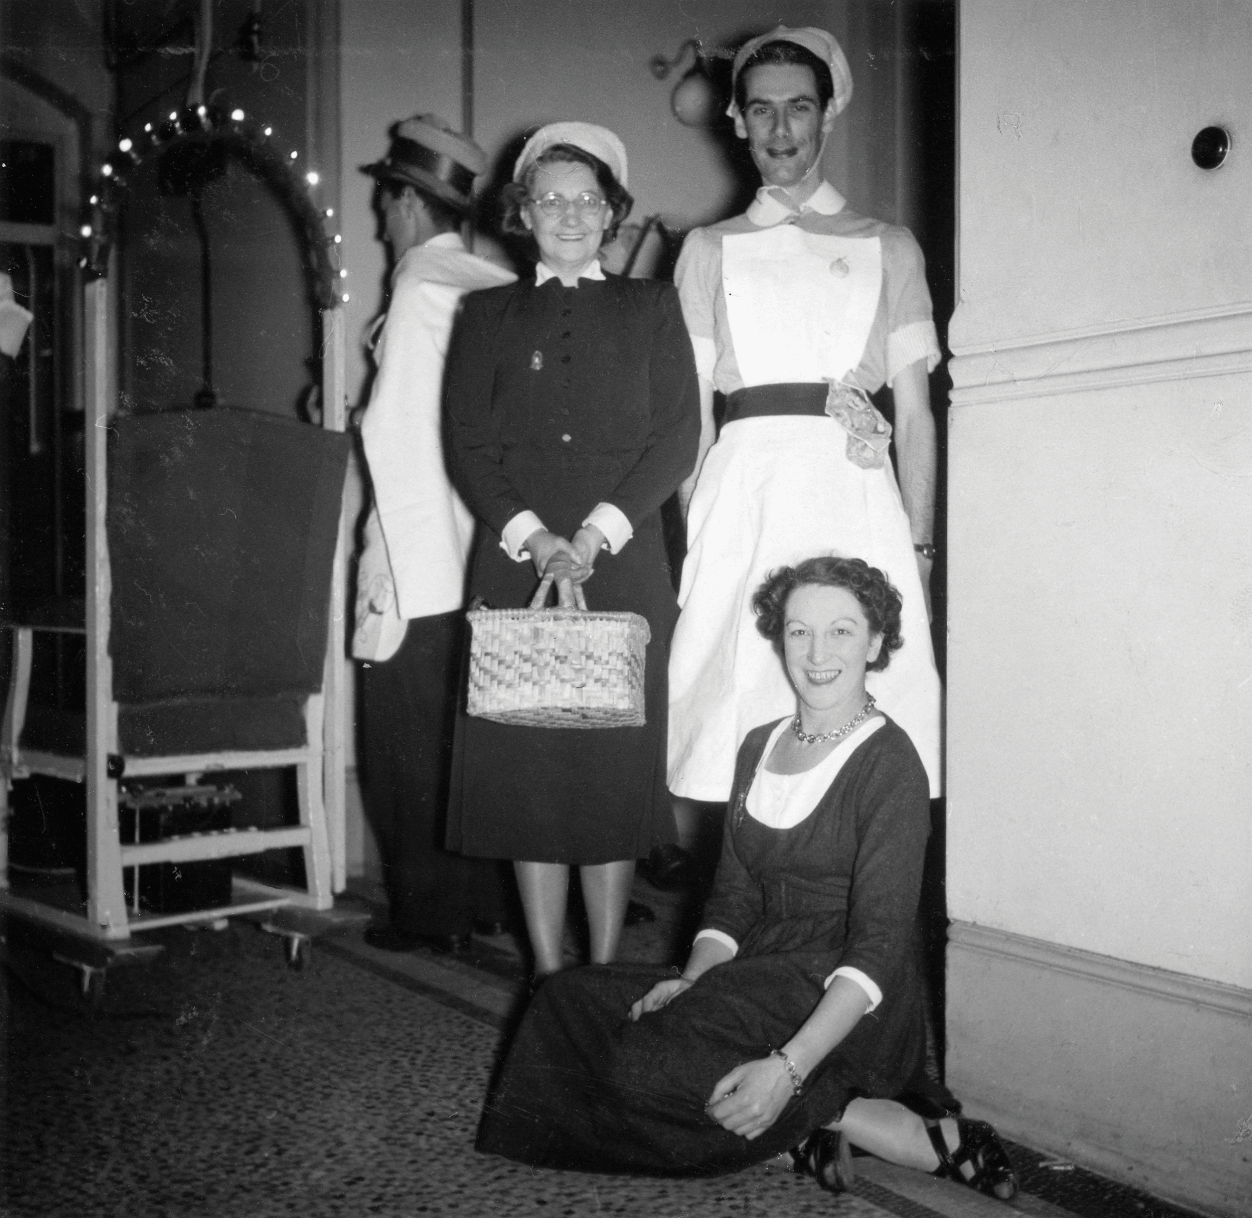 Nightingales Nurse Doctor Hospital Retro 1940s 50s Deluxe Women Costume 